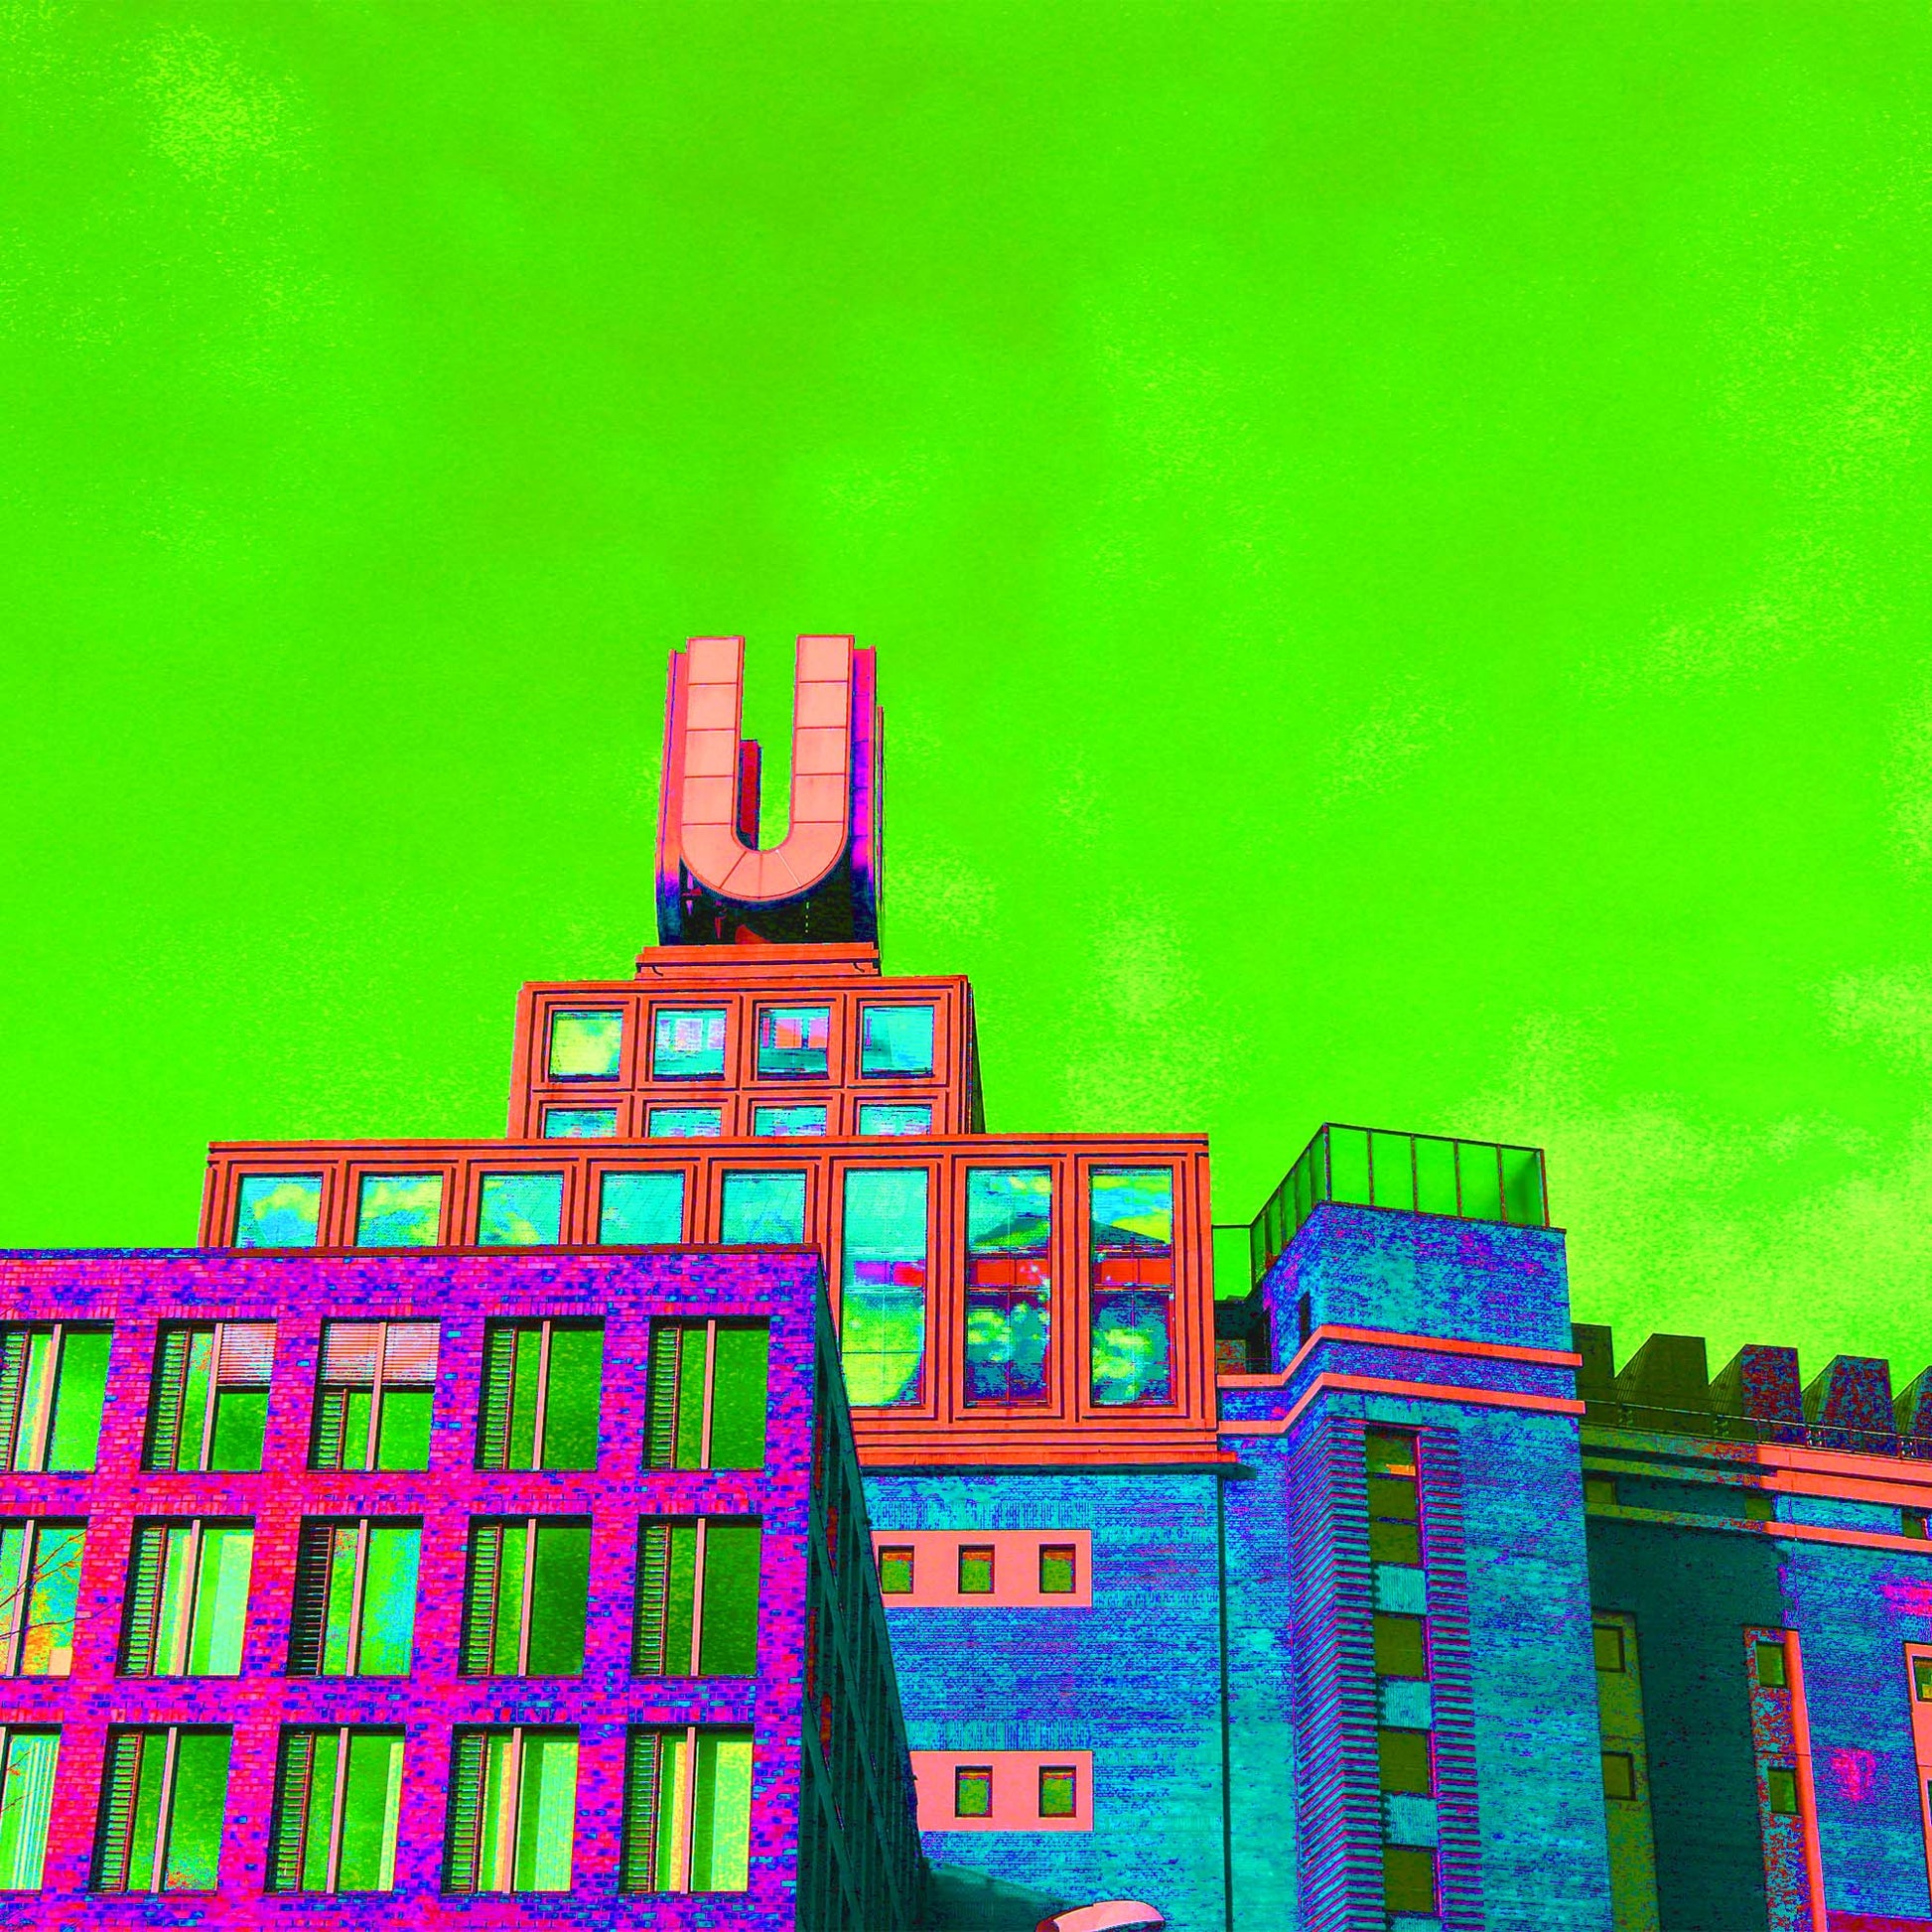 Dortmunder U als Popartbild. Das bunte Gebäude steht vor einem knallig grünen Himmel.